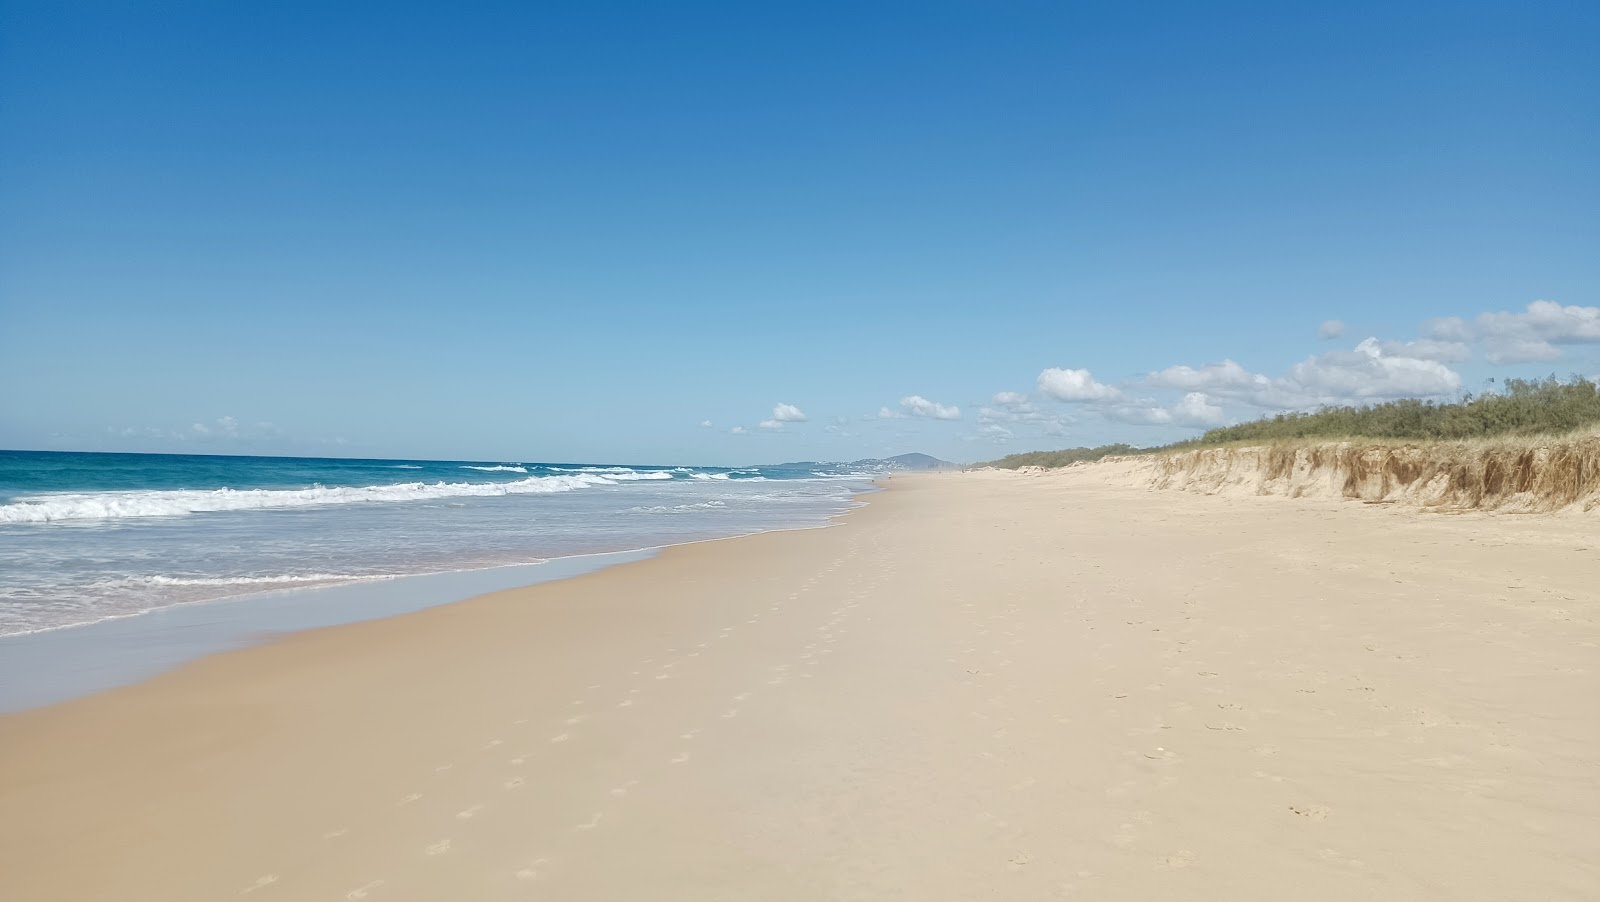 Zdjęcie Marcus Beach z powierzchnią jasny, drobny piasek